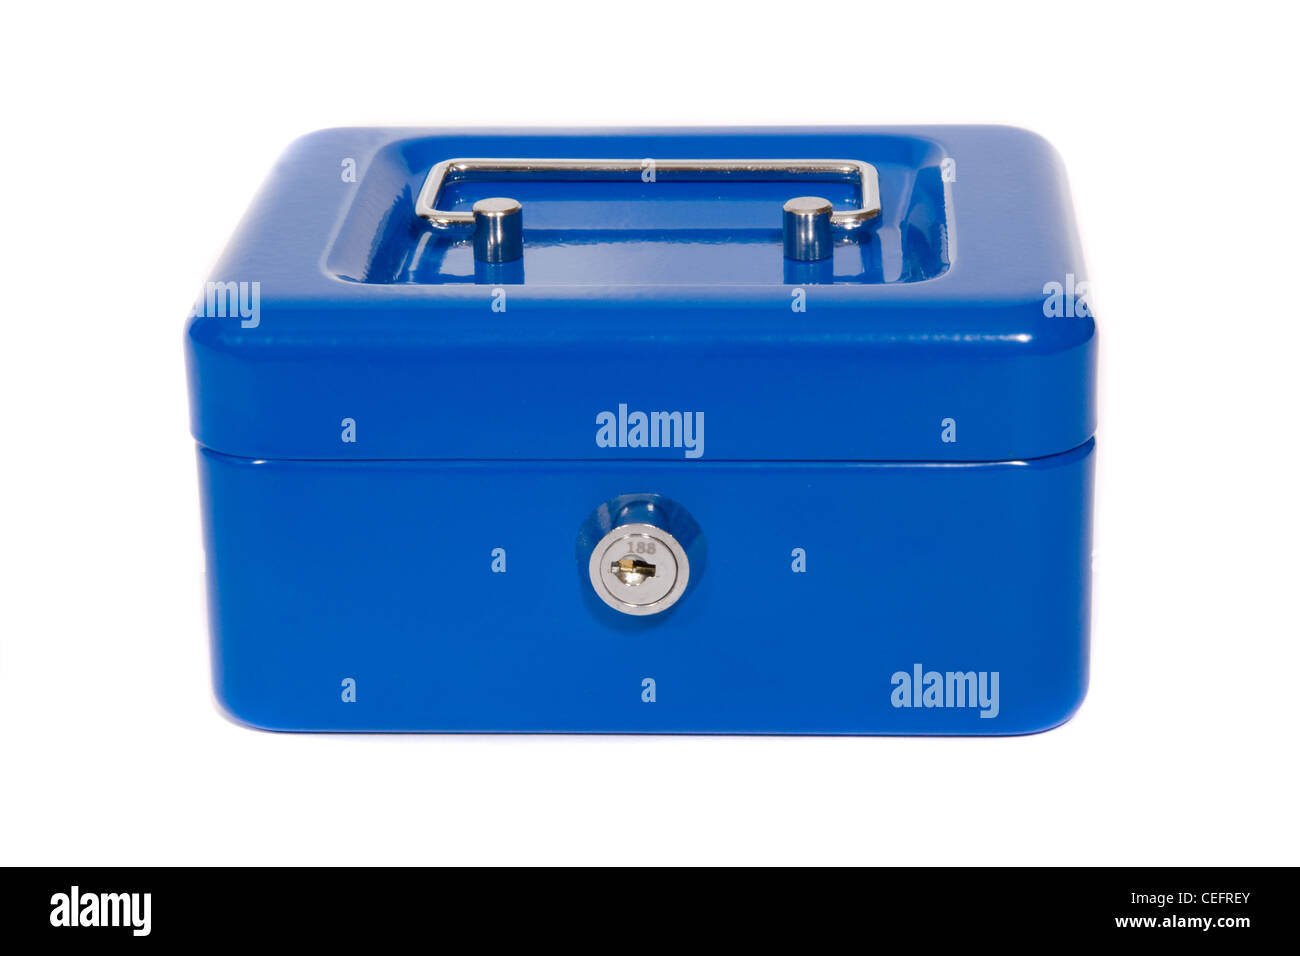 A blue safe. Stock Photo